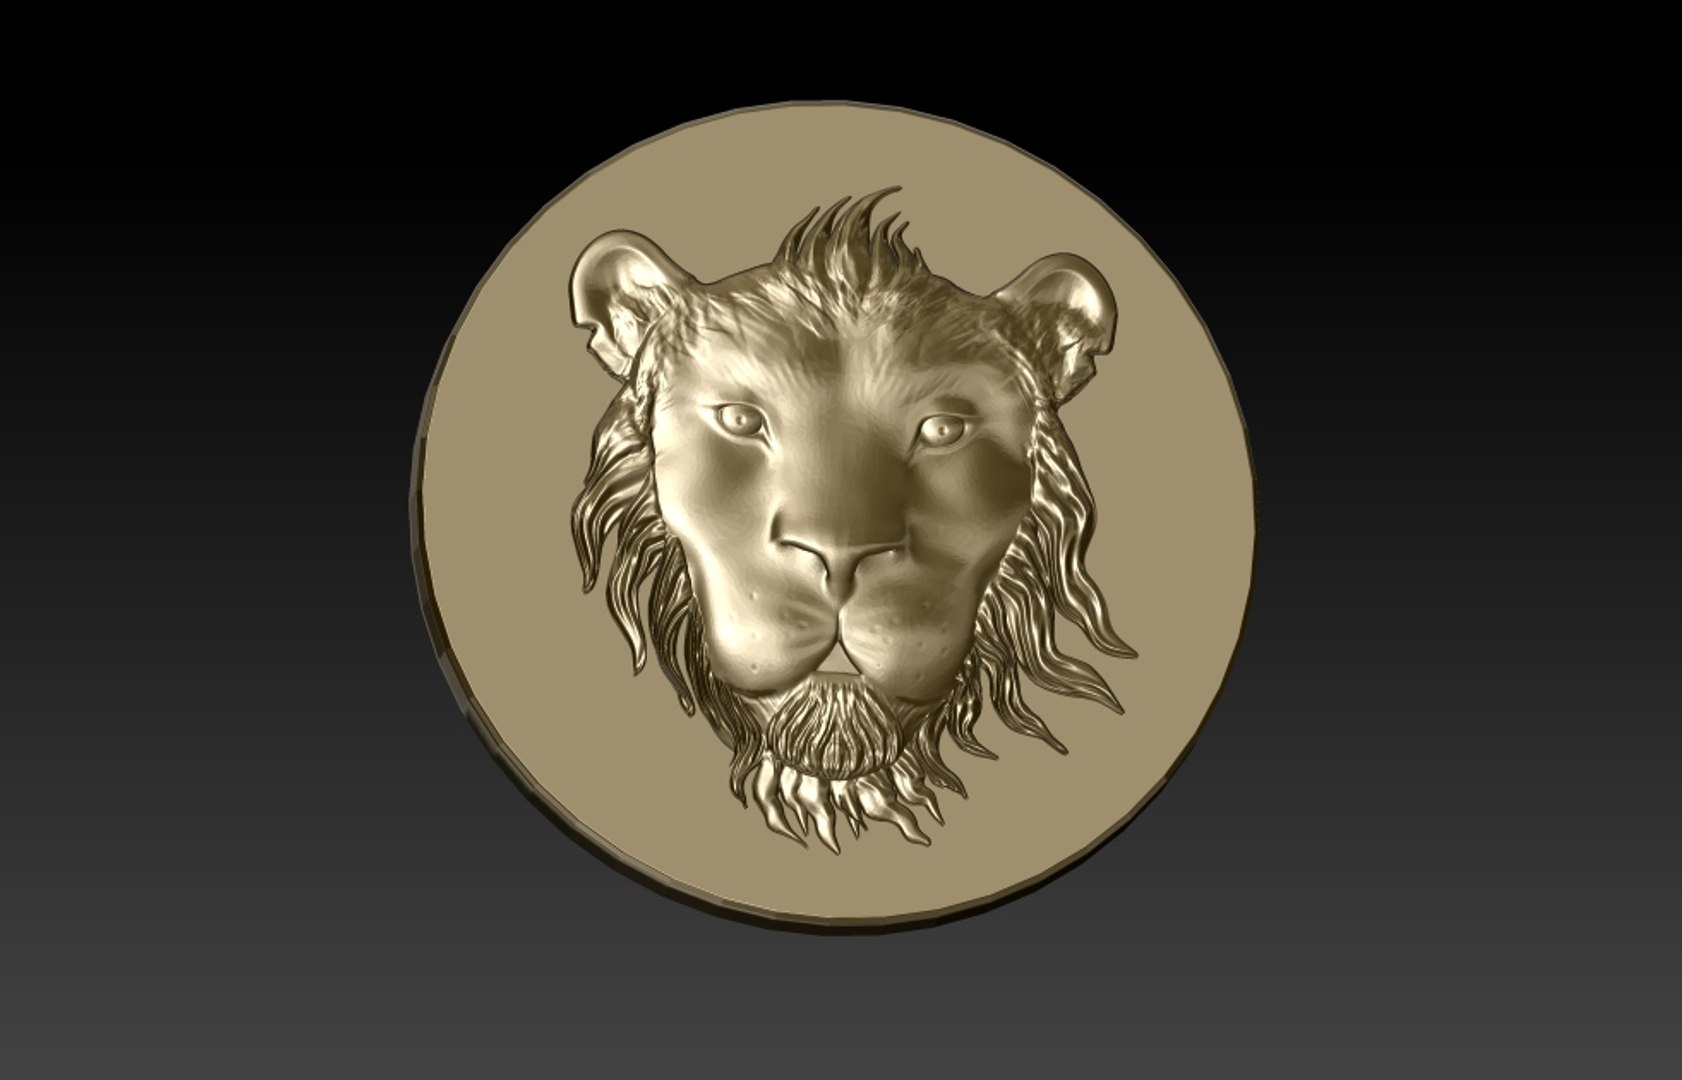 3d tsavo lion head coin model https://p.turbosquid.com/ts-thumb/BD/rZhsPI/jprlYYU3/tsavolion5/jpg/1411901204/1920x1080/fit_q87/f375321dce3c76826d821b926b38013b0eae6854/tsavolion5.jpg